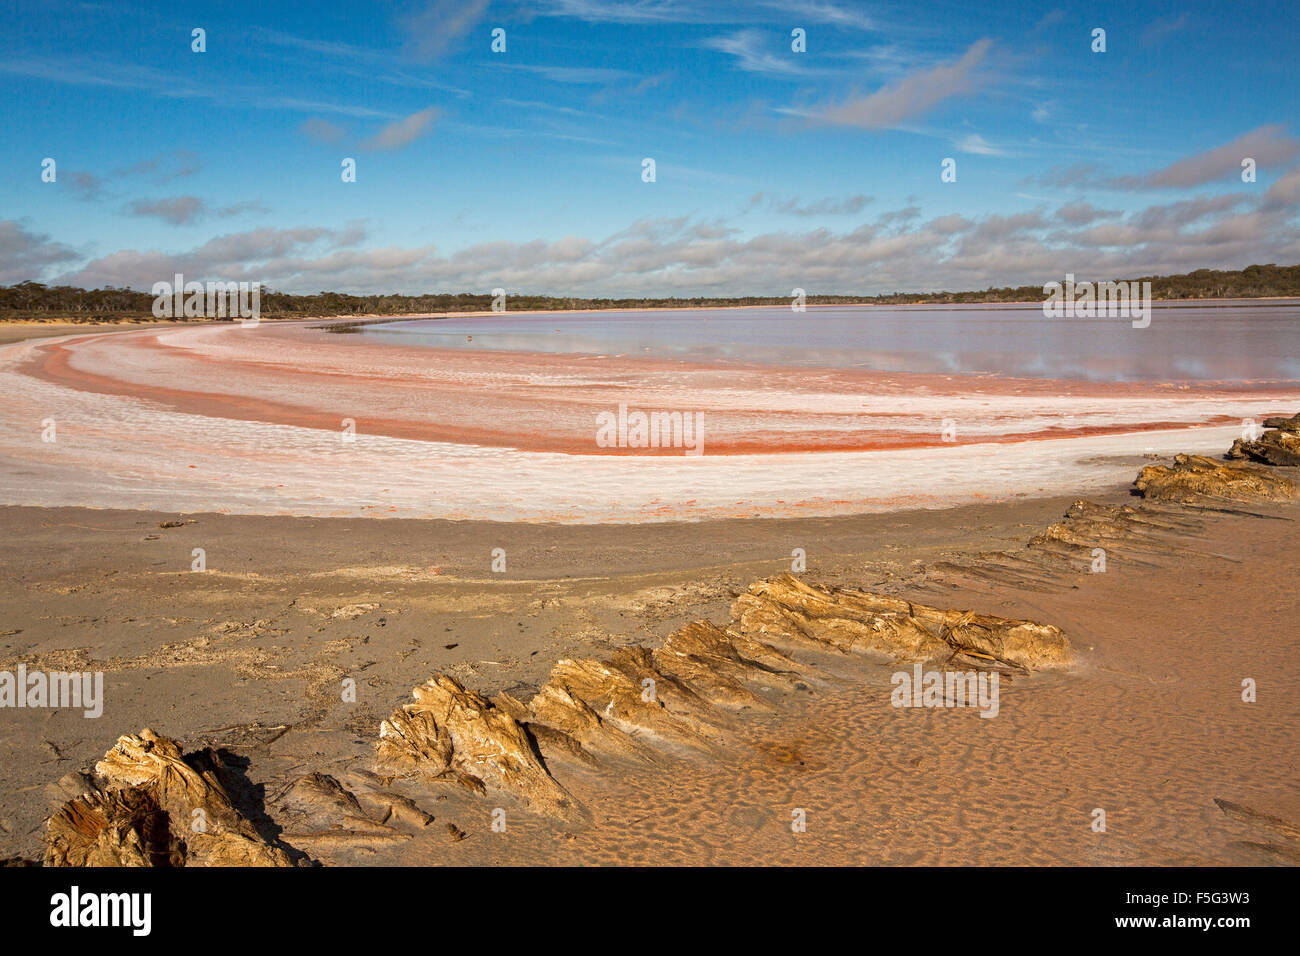 Riesige Outback-Landschaft mit ungewöhnlich lebhaft rosa Schichten von Salz neben ruhigen blau und rosa Gewässer des Sees im Murray-Sunset National Park Australien Stockfoto